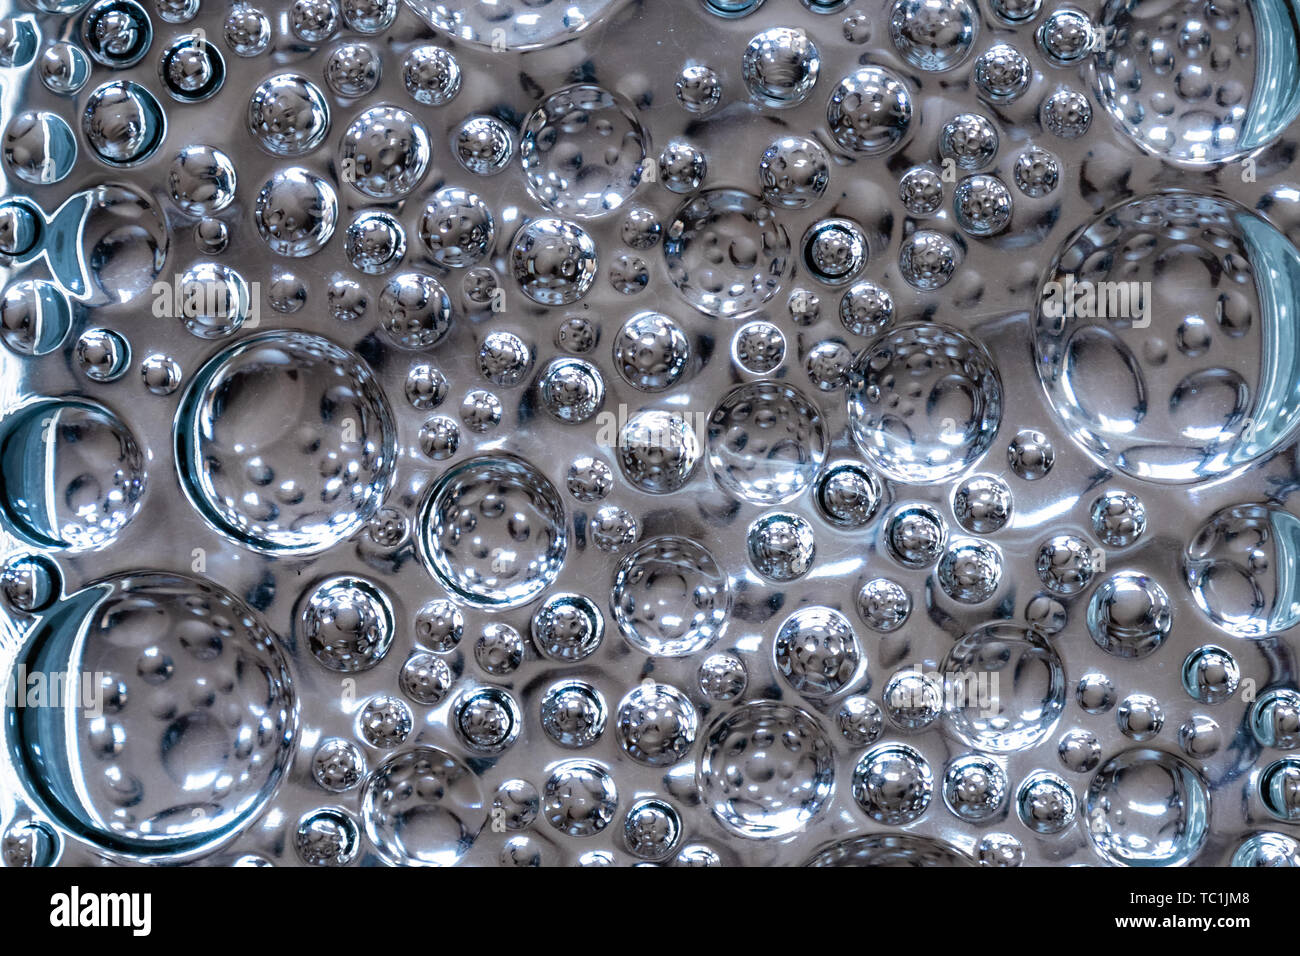 https://c8.alamy.com/comp/TC1JM8/transparent-patterned-bubble-glass-texture-TC1JM8.jpg